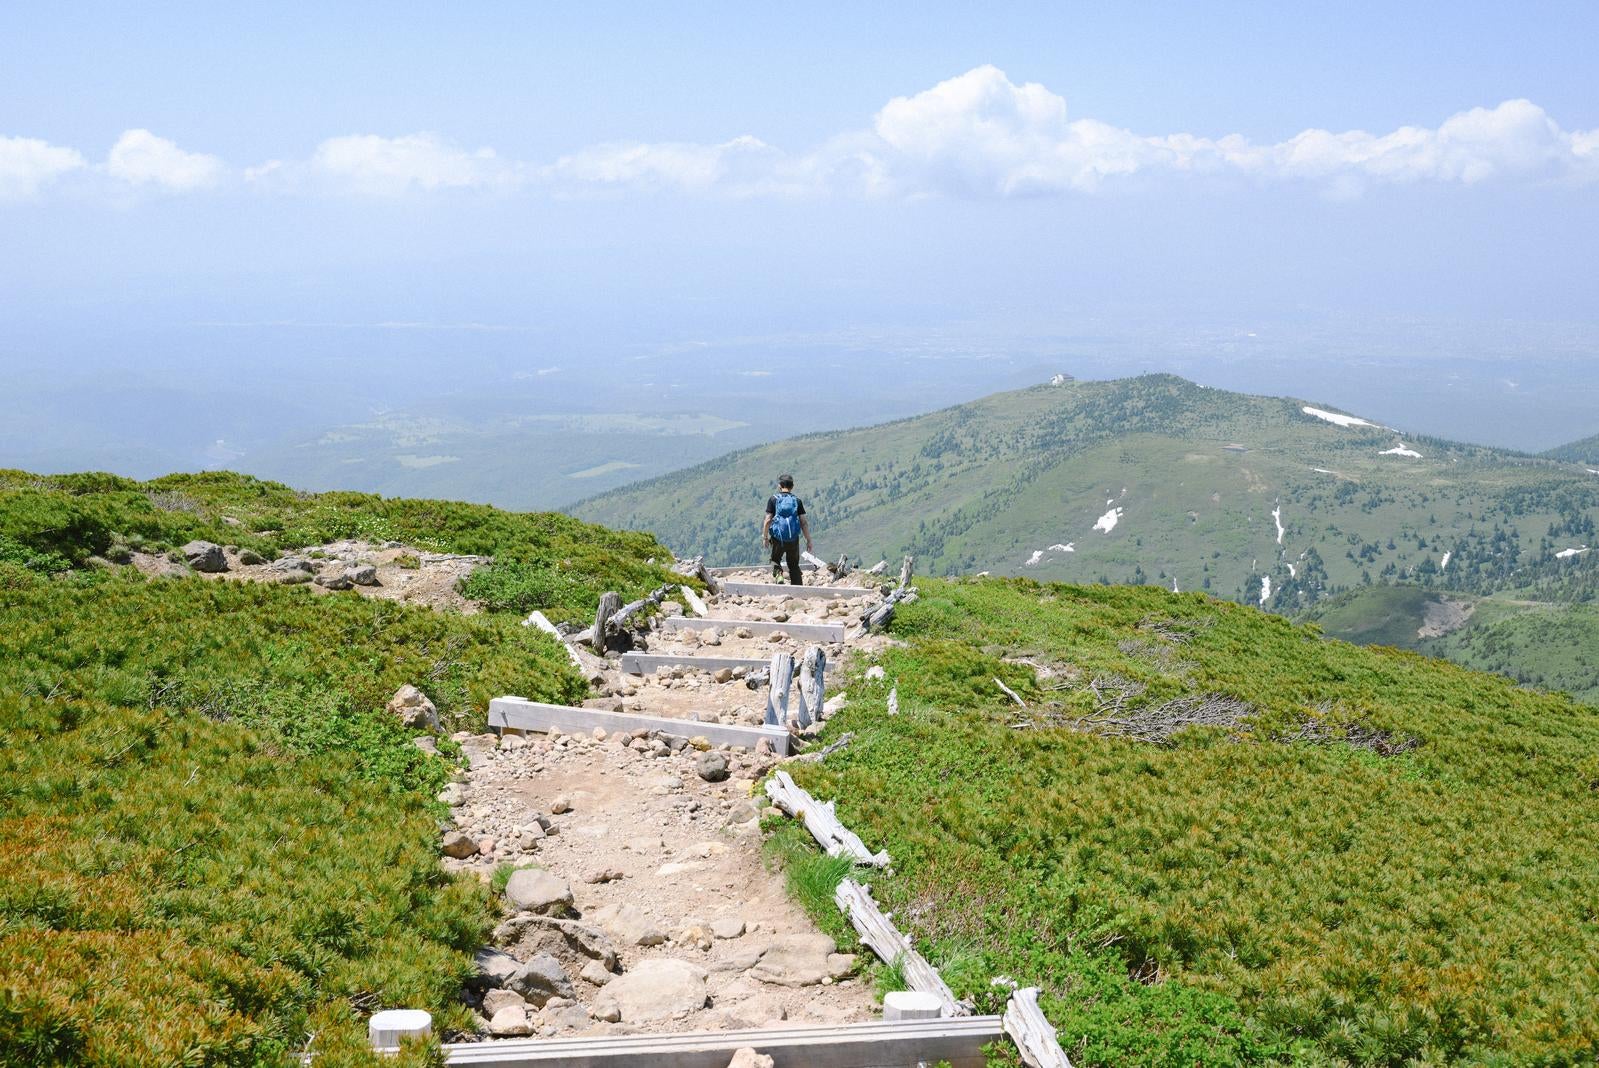 「八甲田山山頂からロープウェイ方面へと下山する人」の写真